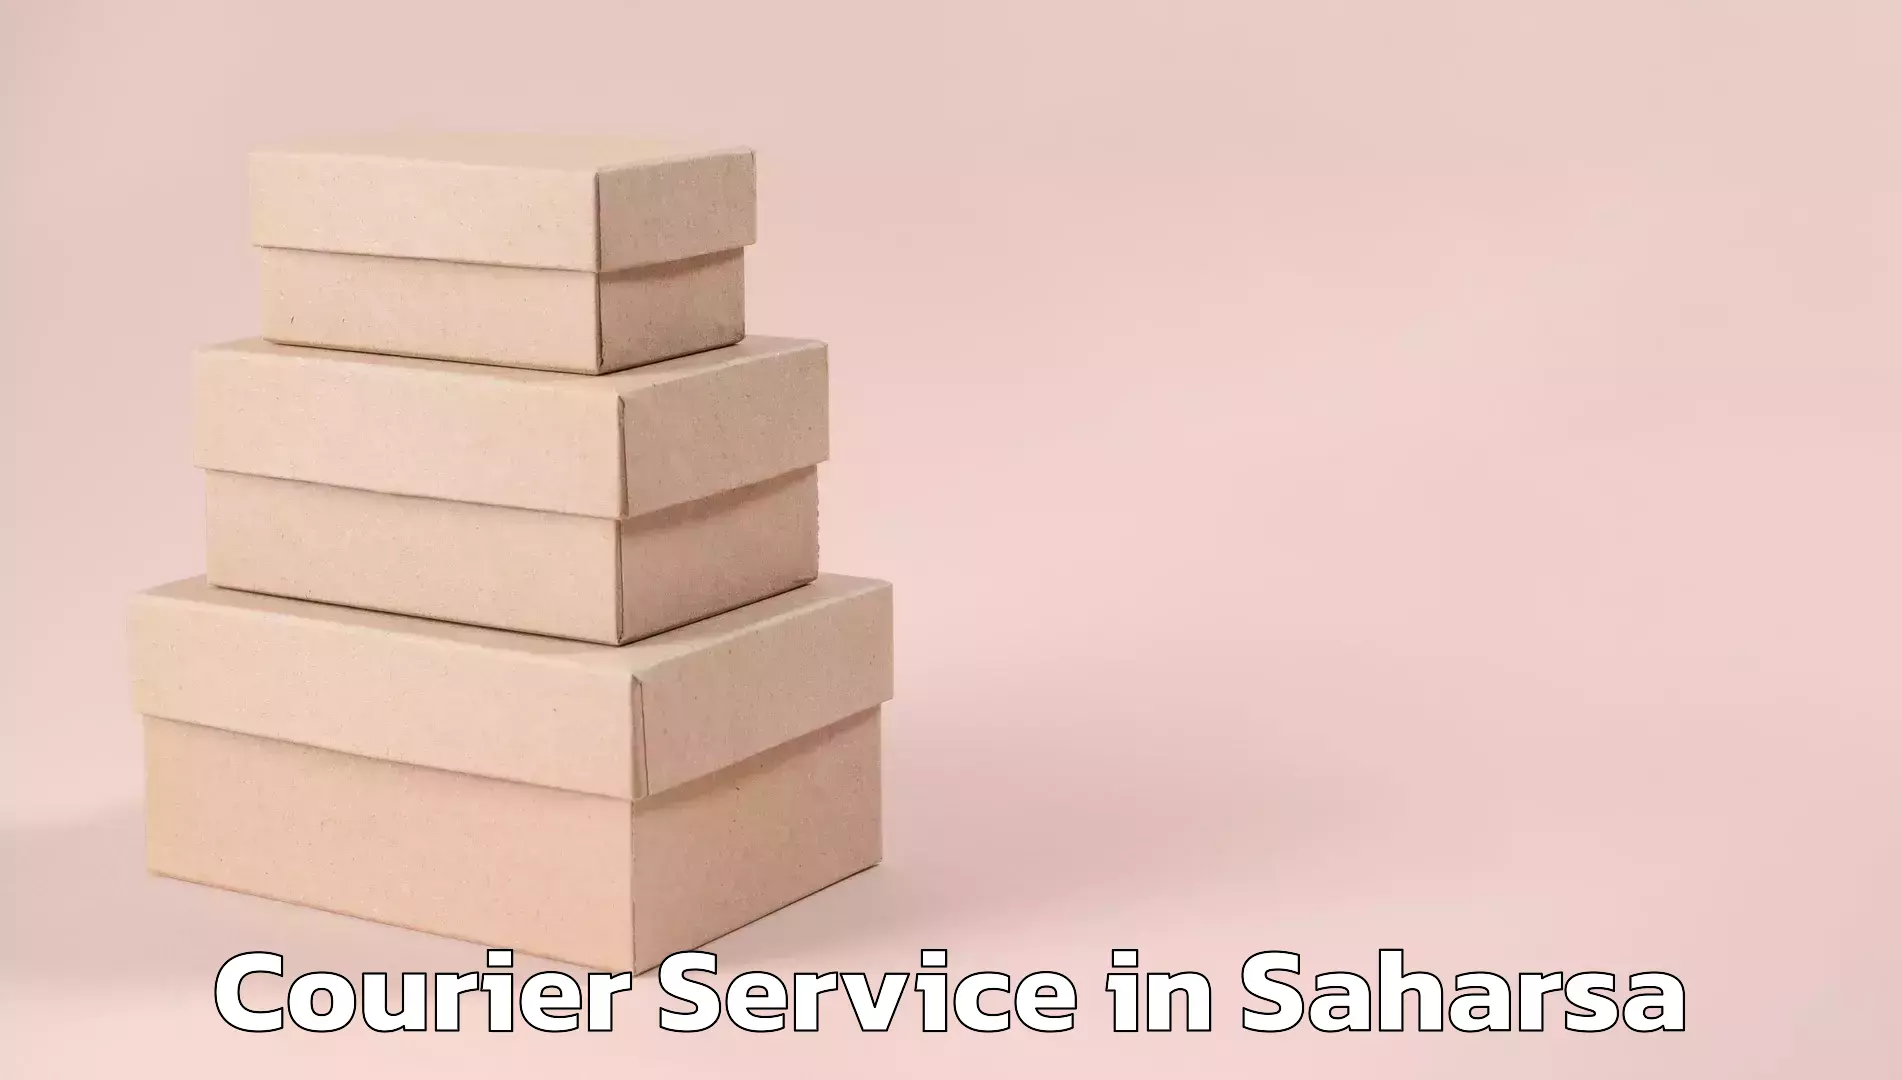 Customer-centric shipping in Saharsa